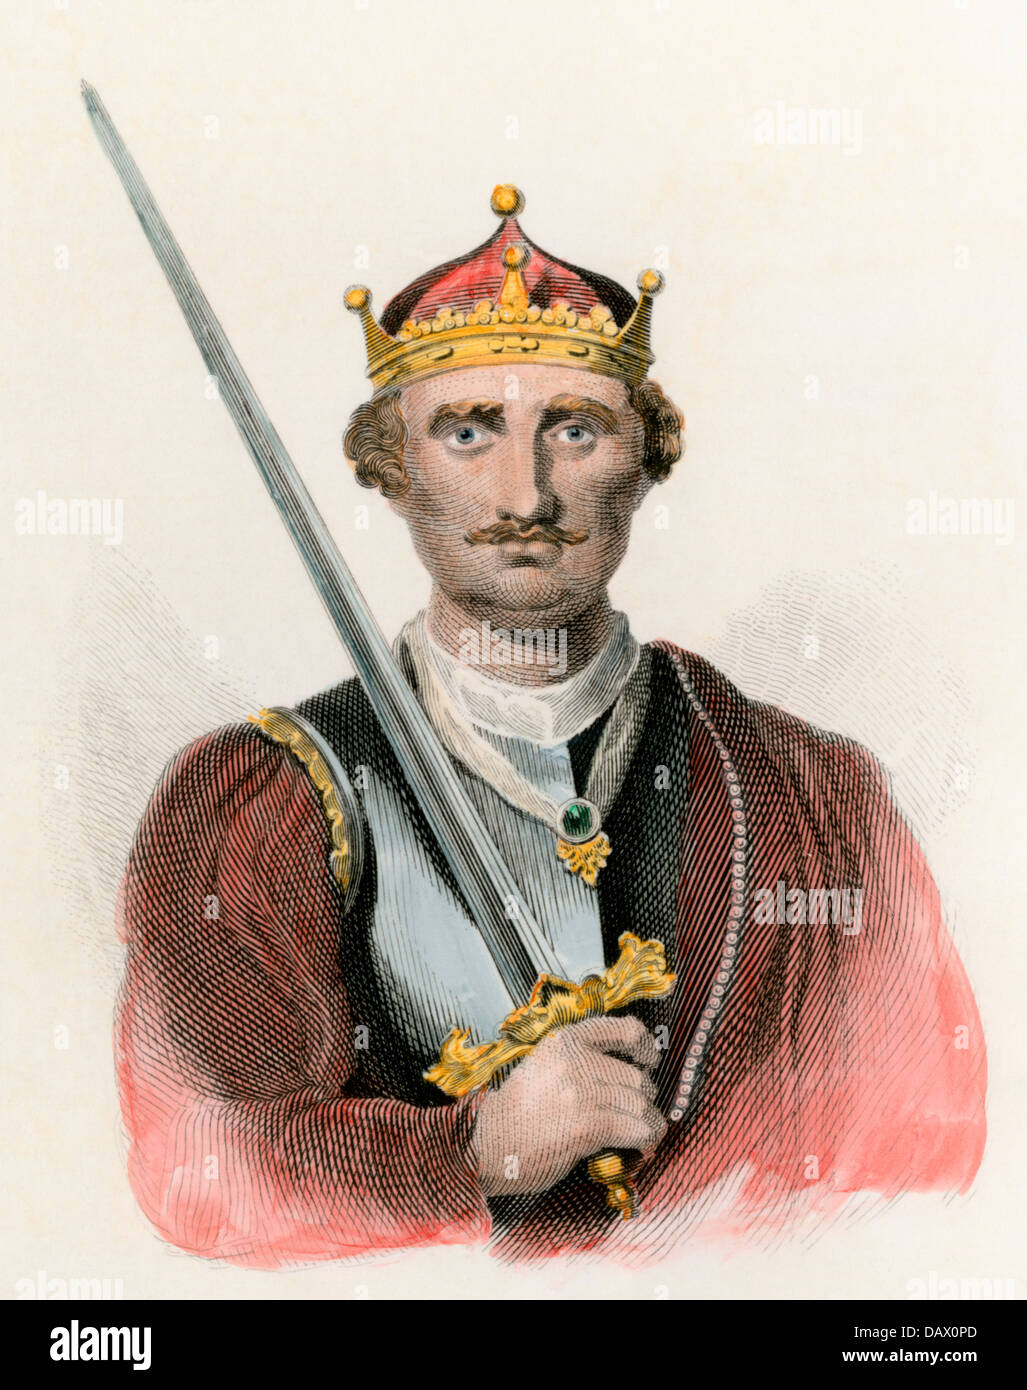 Re d'Inghilterra Guglielmo il Conquistatore, che porta una spada. Colorate a mano l'incisione Foto Stock